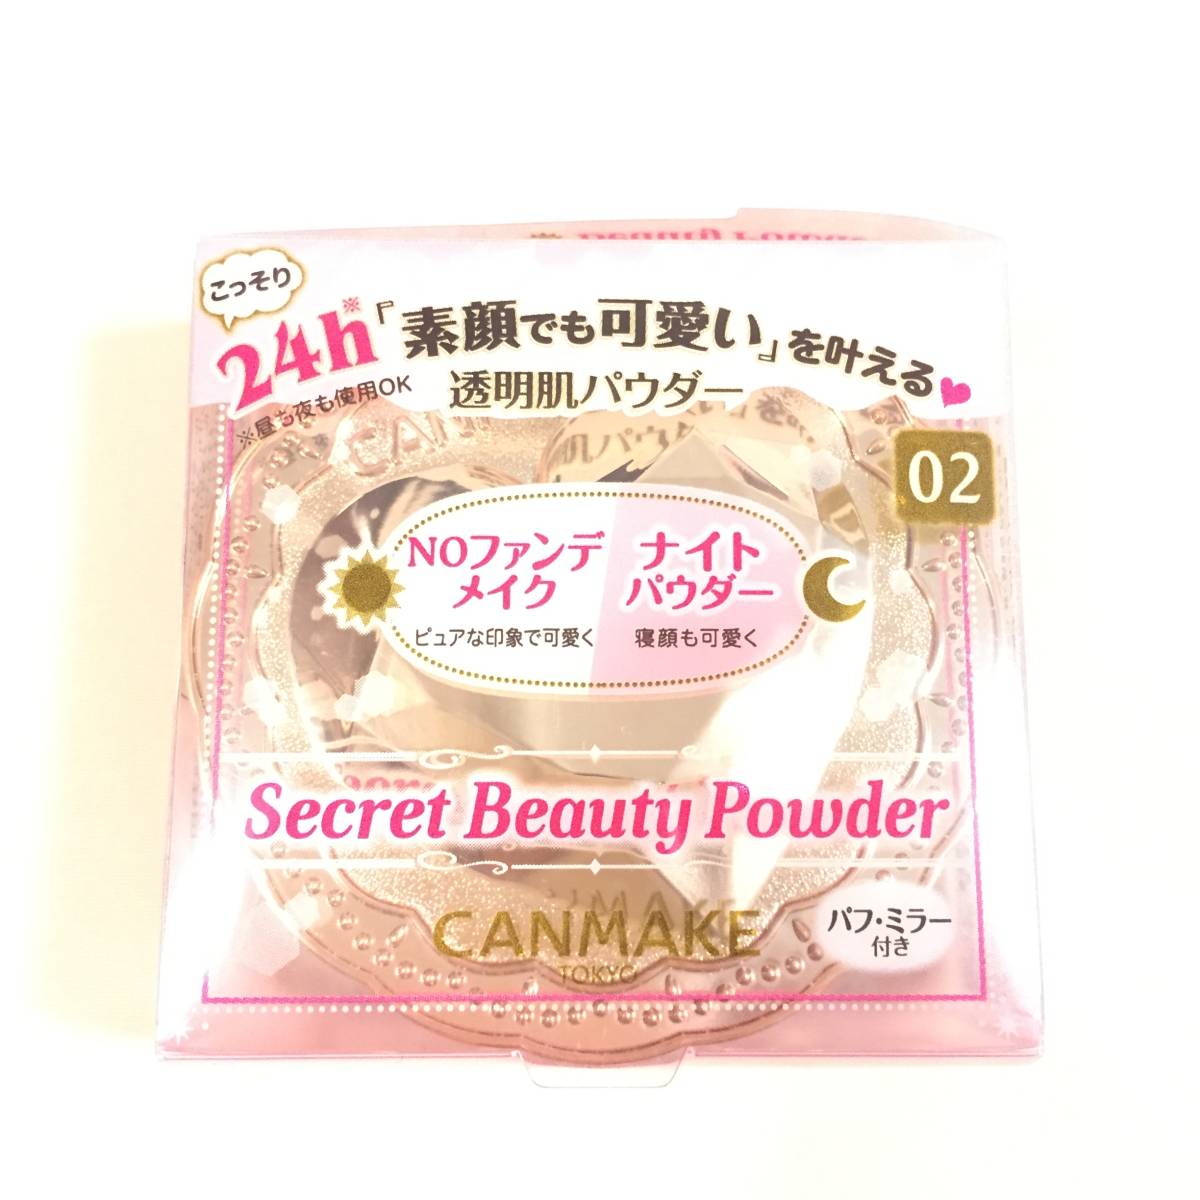  новый товар *CANMAKE ( can макияж ) Secret красота пудра E 02 ( пудра для лица )*